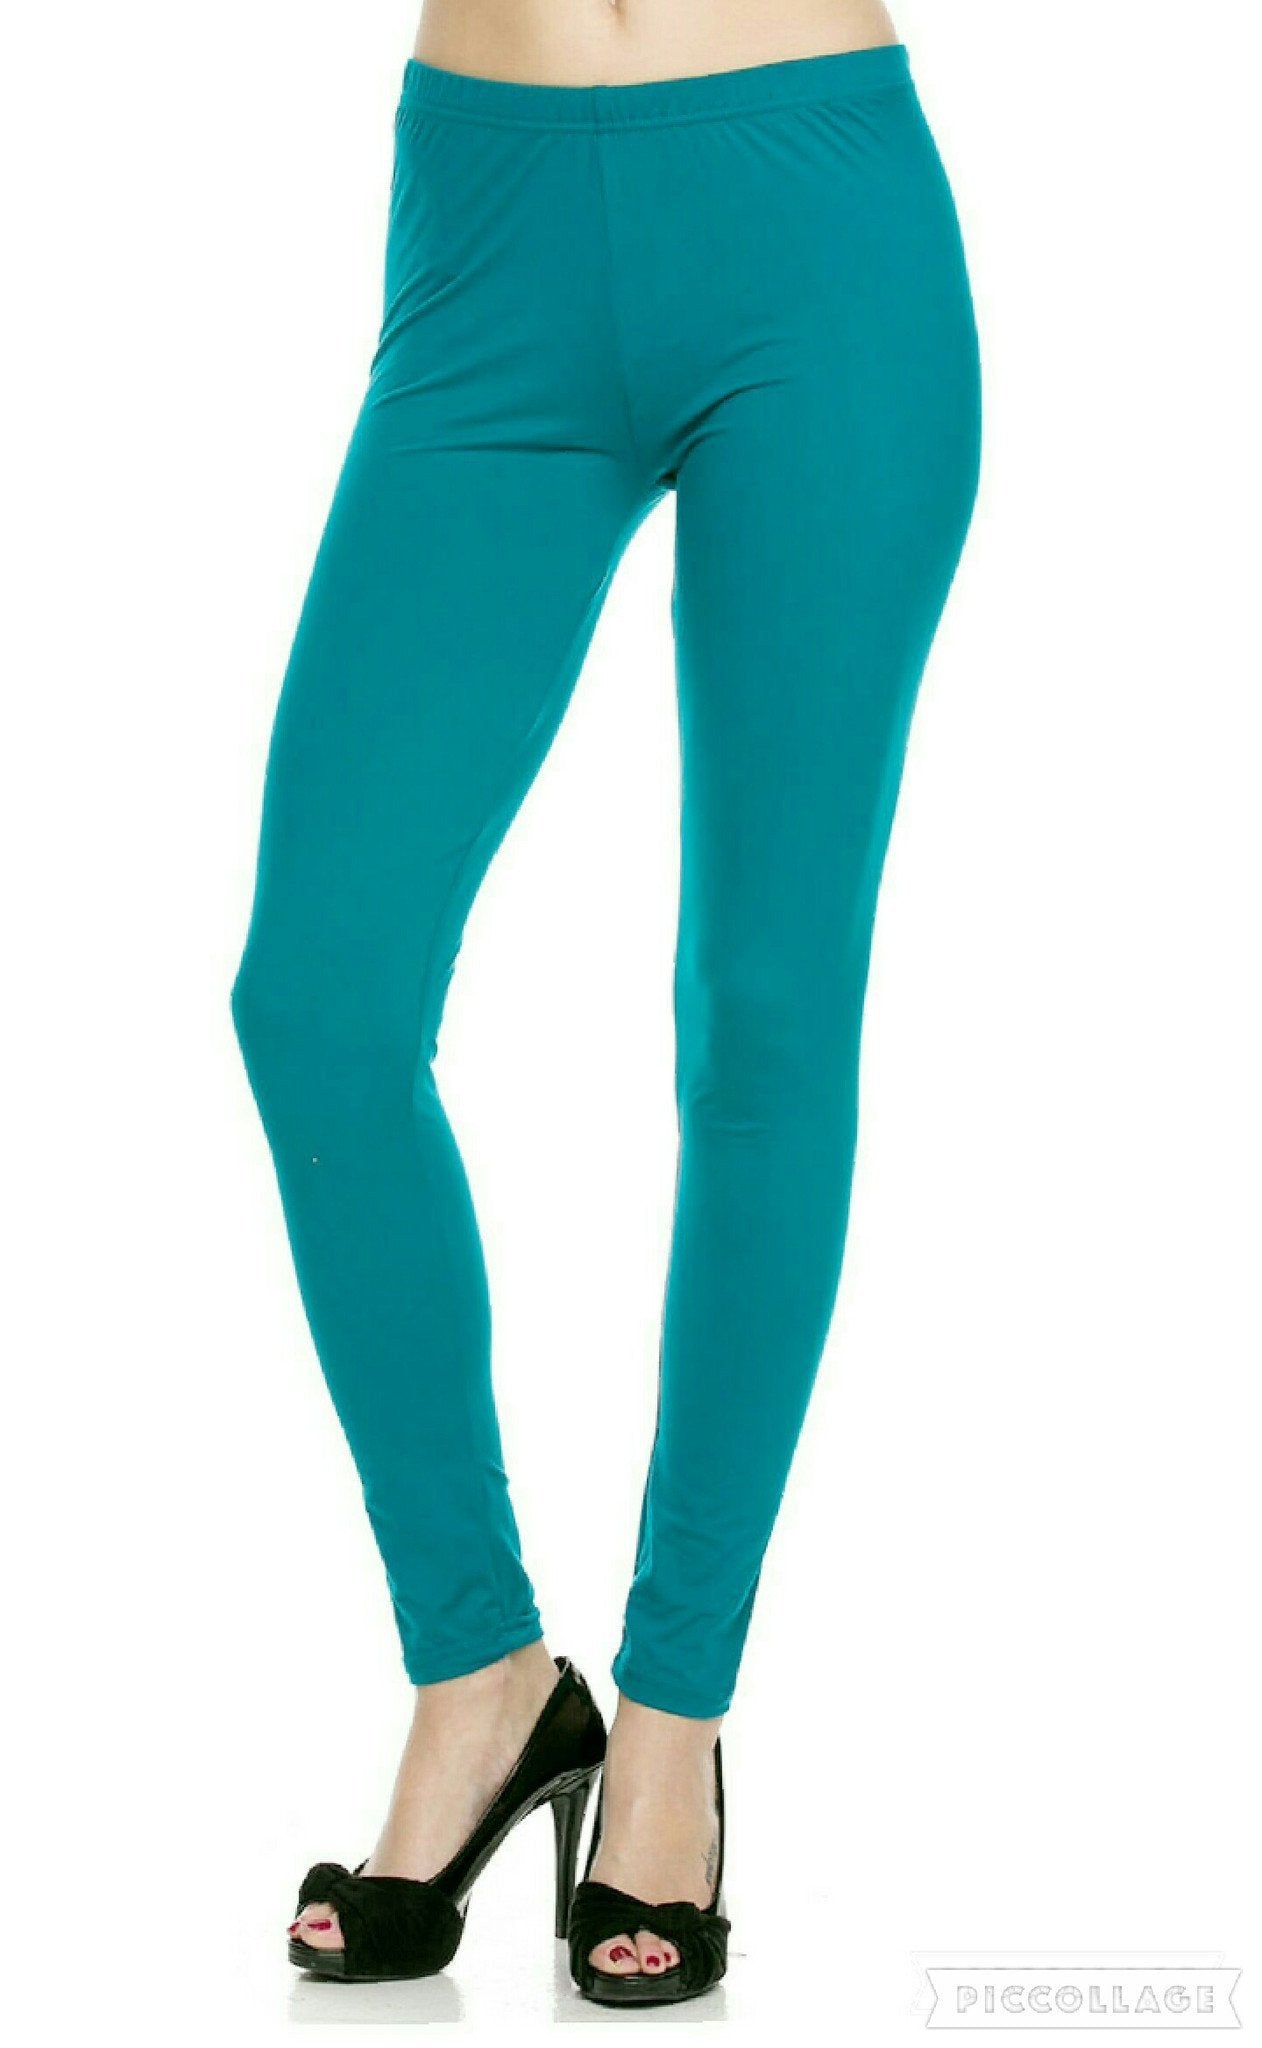 Buy Jcss Womens Lycra Churidar Leggings Turquoise online